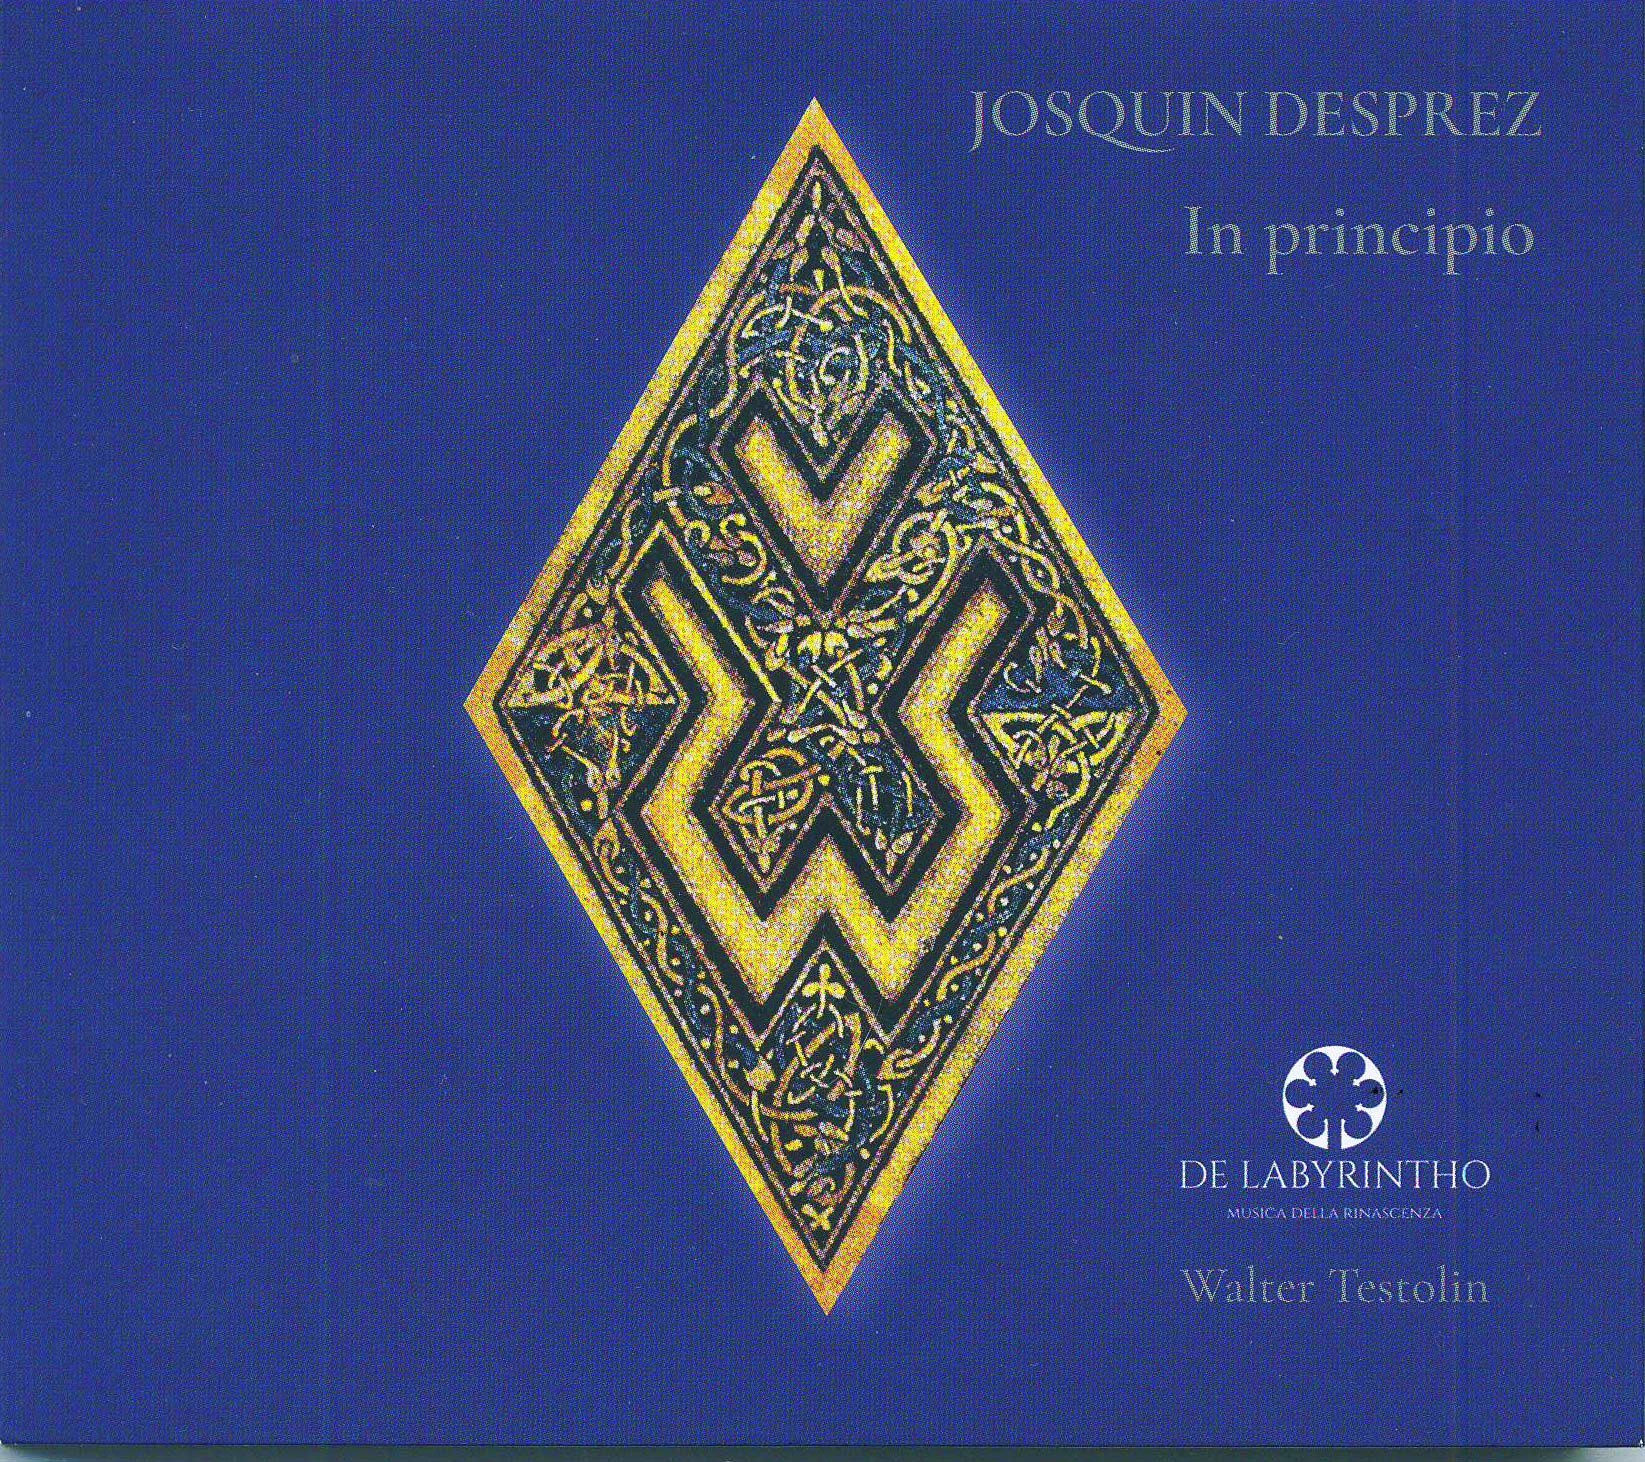 De Labyrintho - copertina disco "In principio" - Josquin Desprez